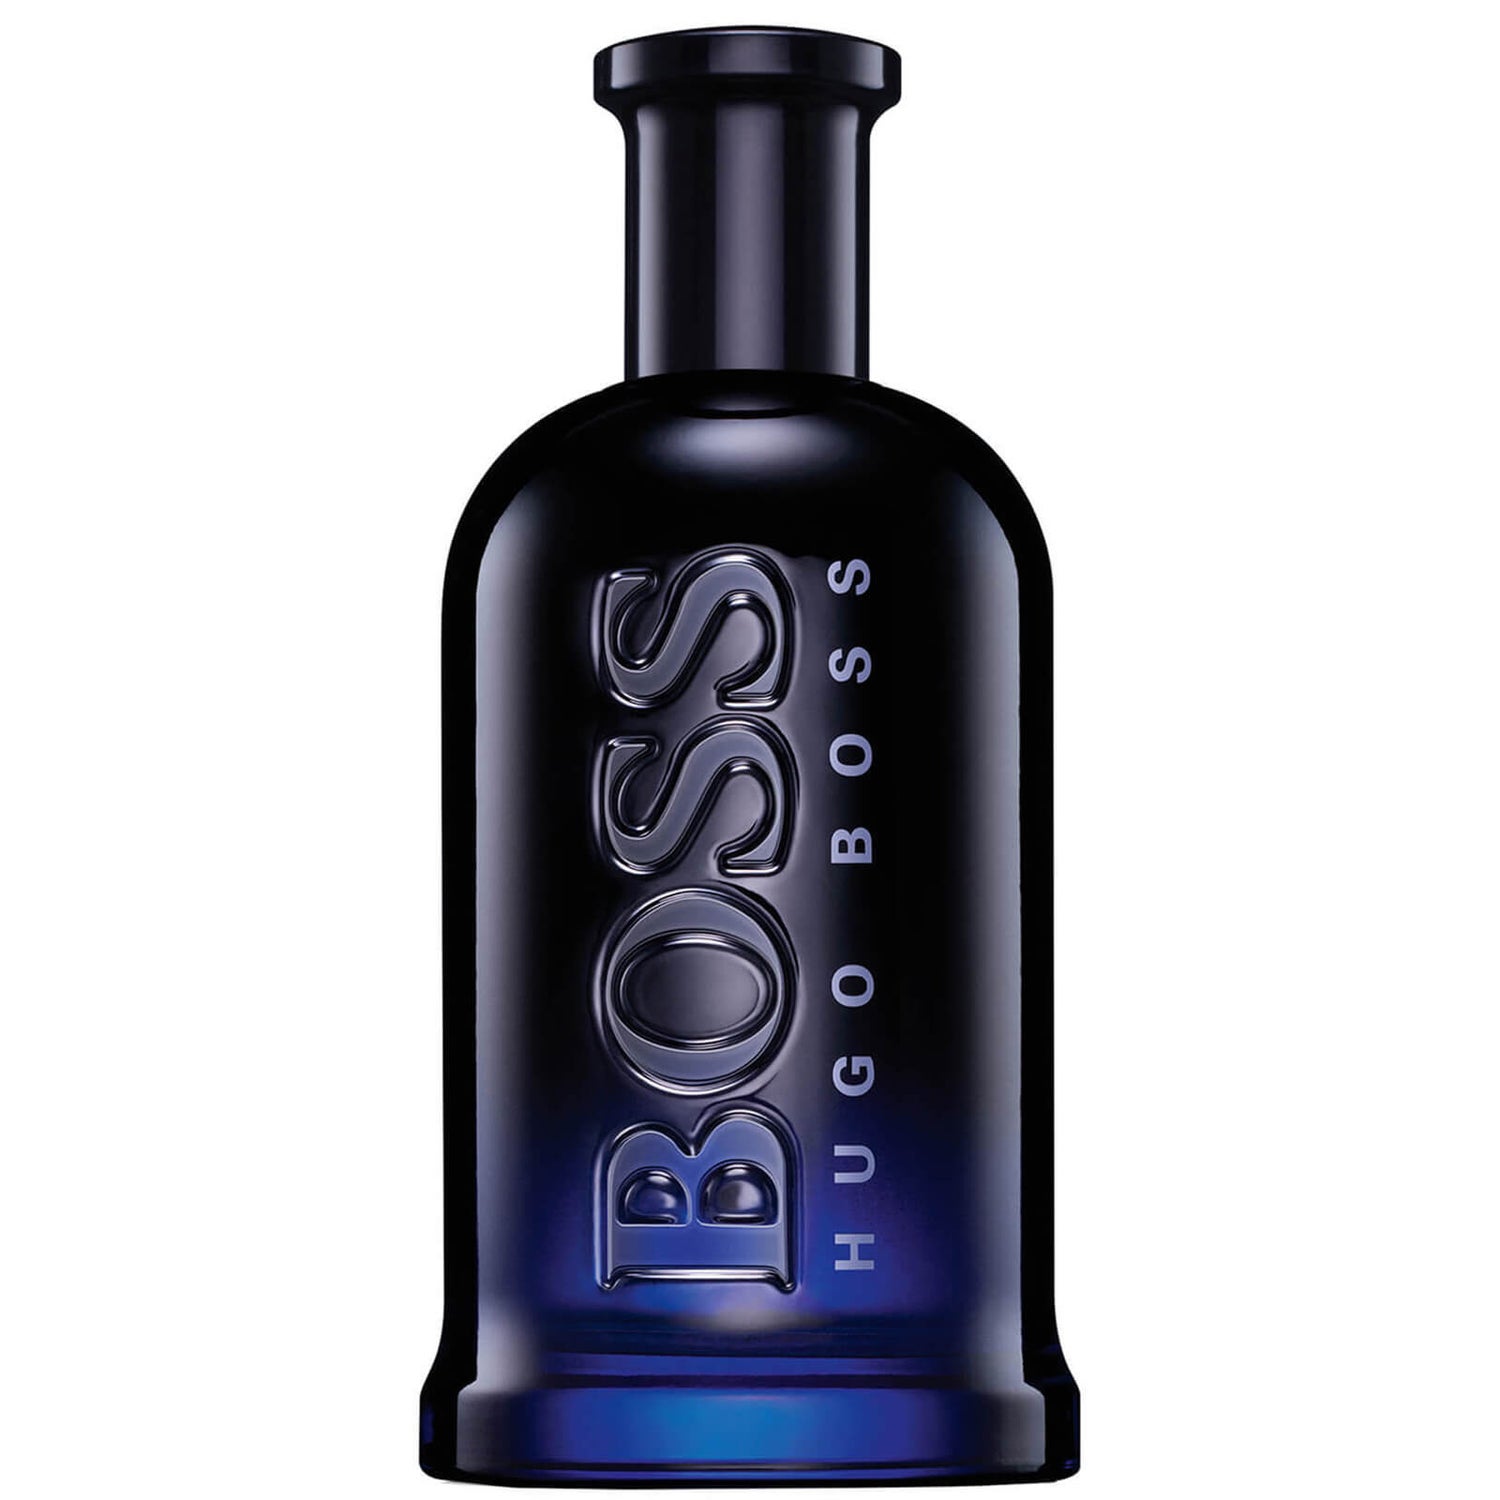 Eau de Toilette BOSS Bottled Night Hugo Boss 200 ml